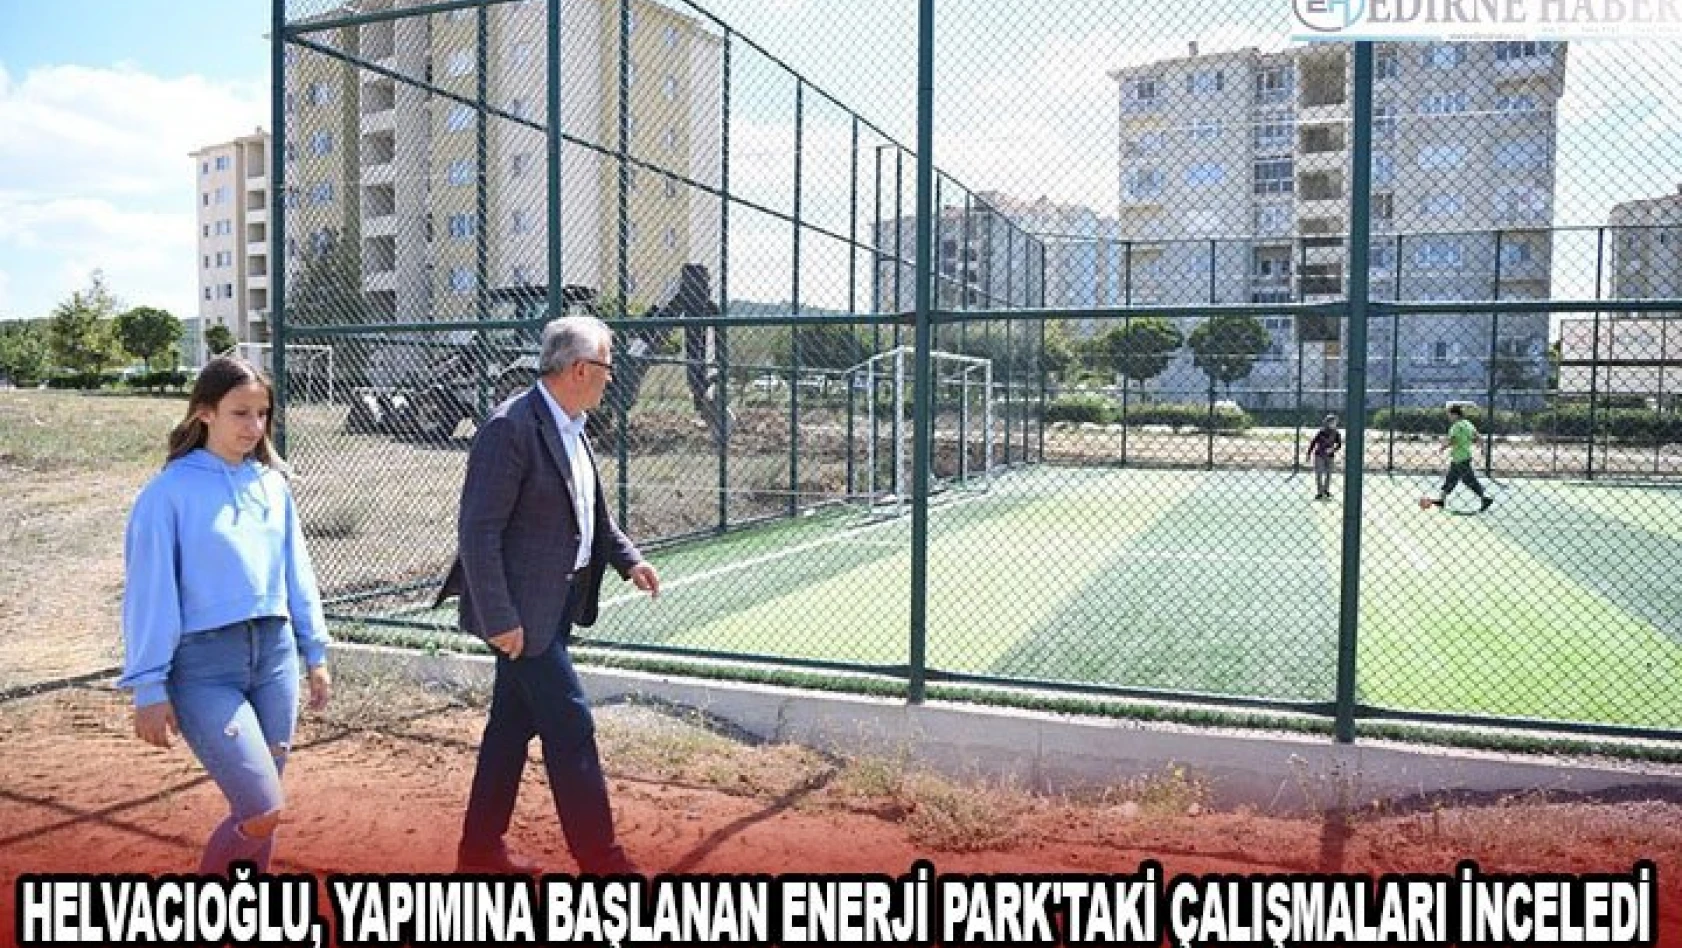 Helvacıoğlu, yapımına başlanan Enerji Park'taki çalışmaları inceledi